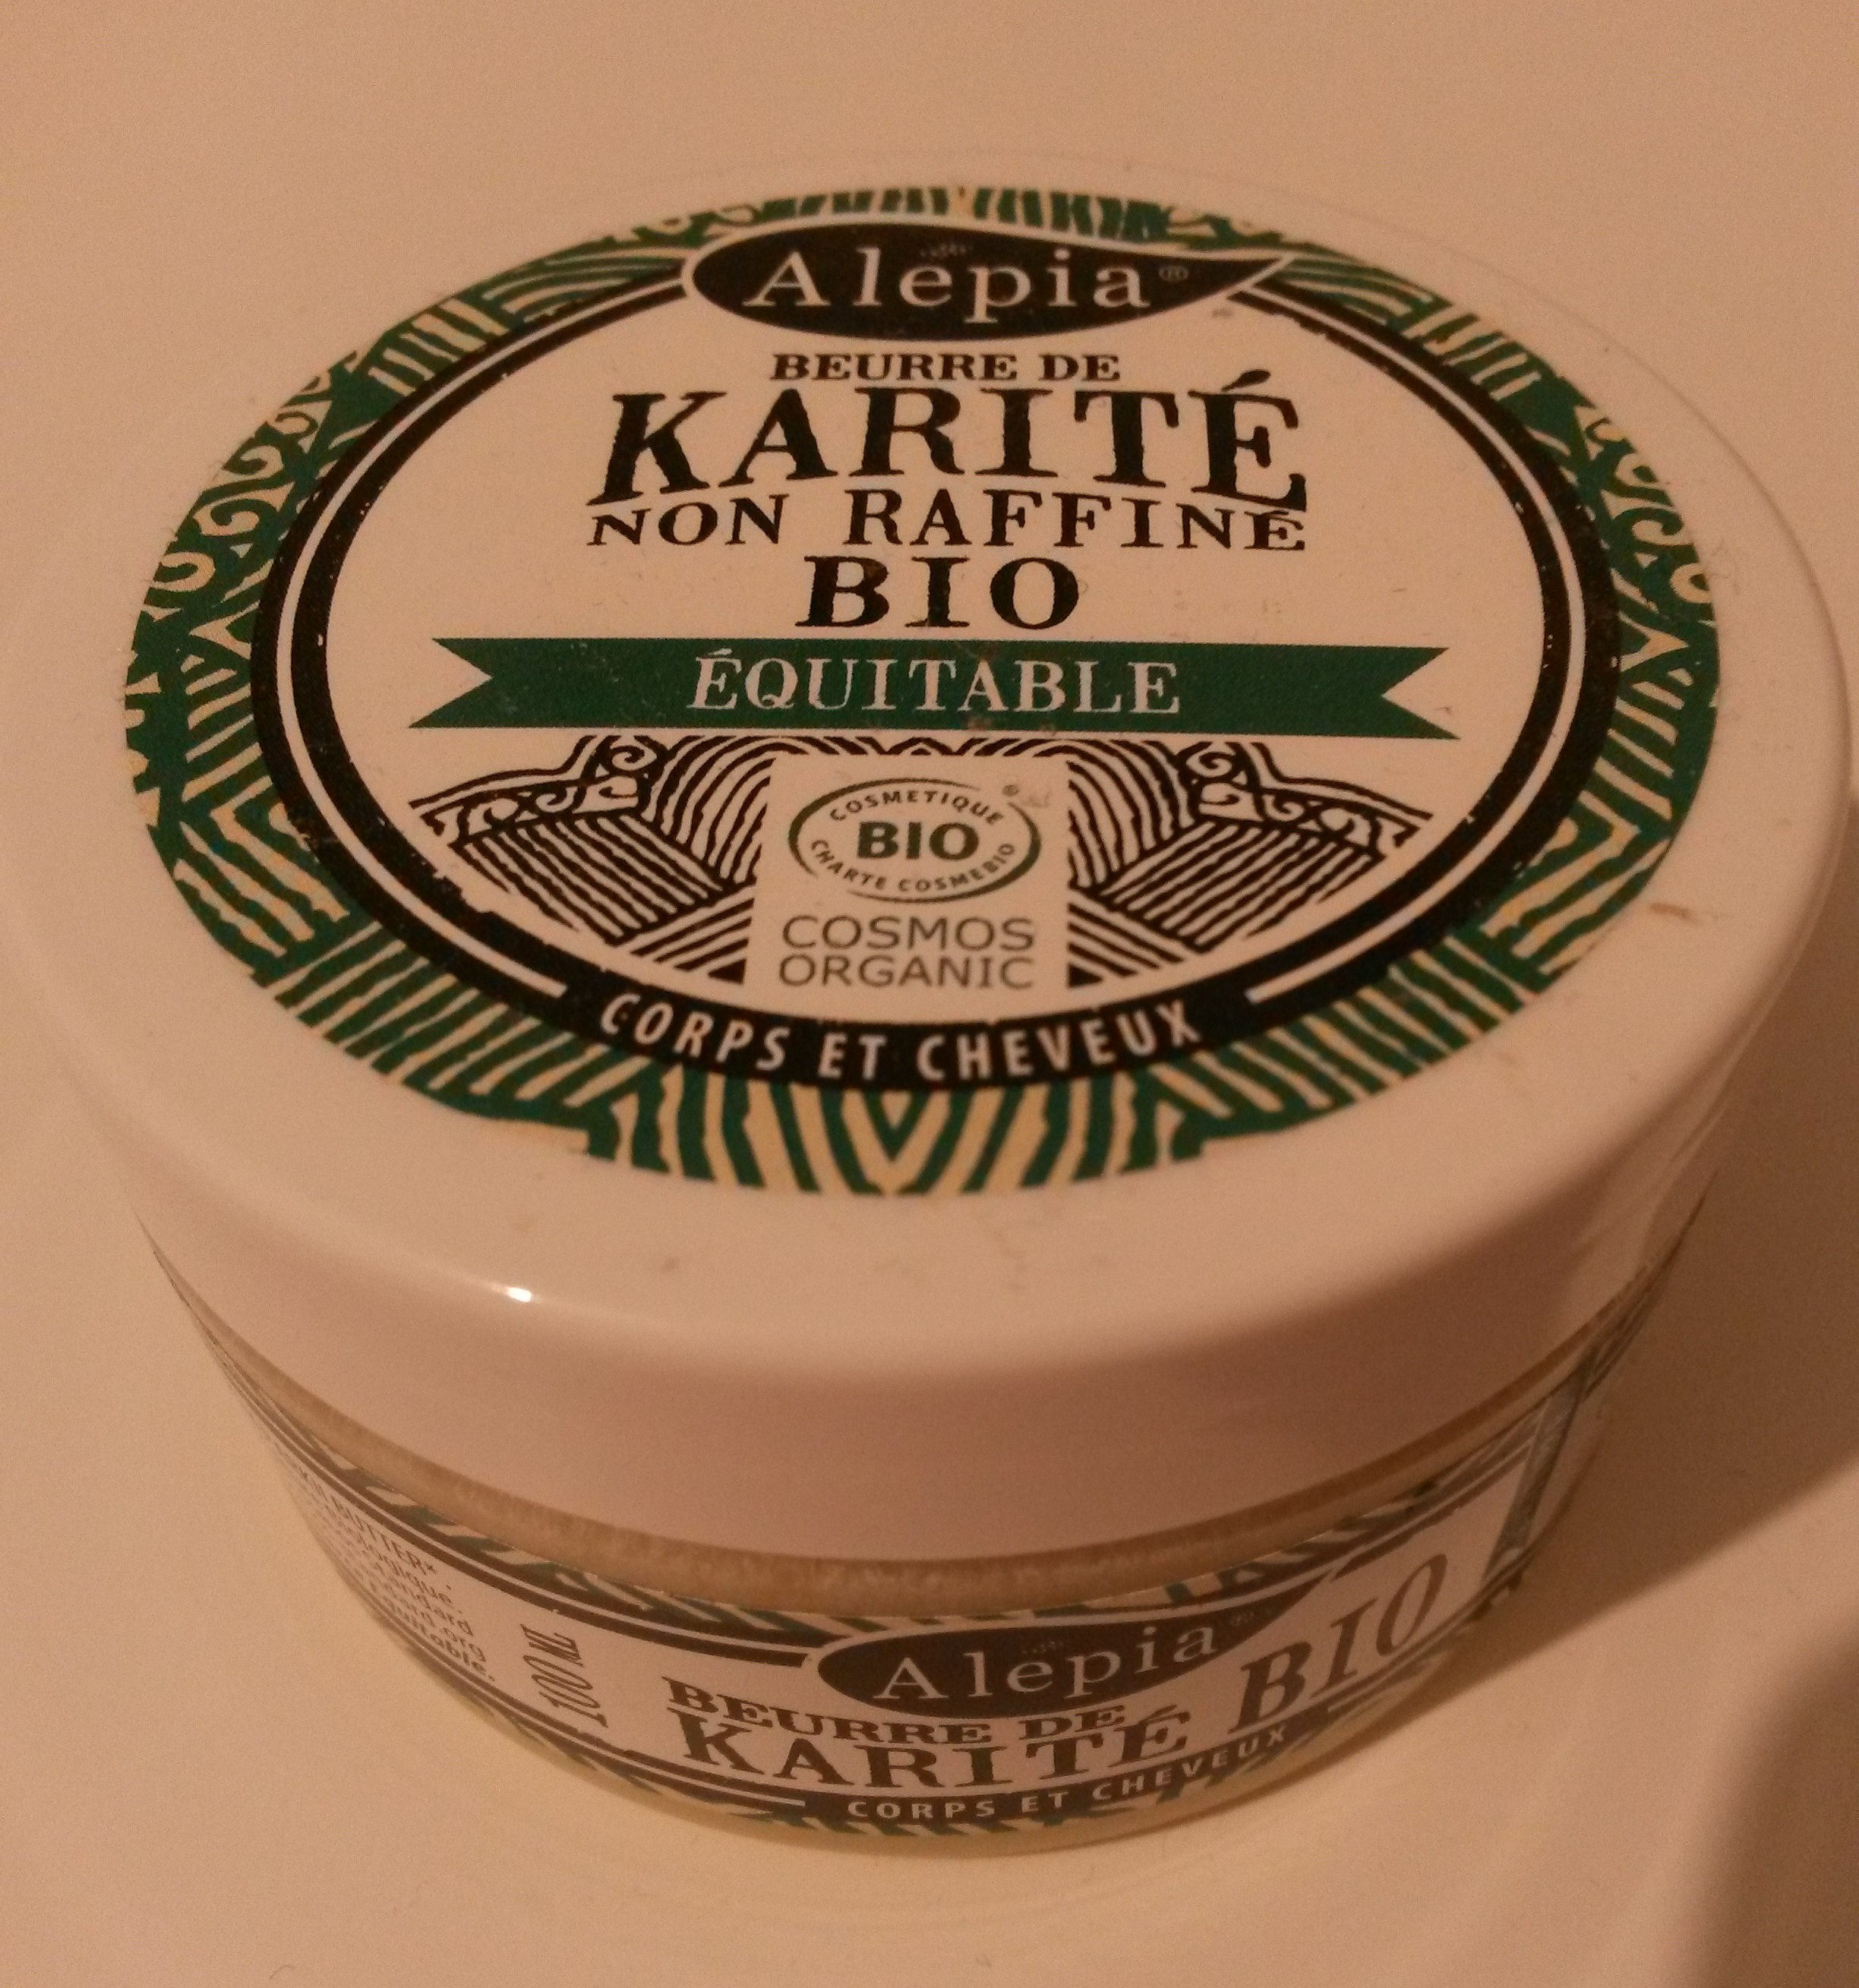 Beurre de karité - non raffiné, bio, équitable - Produktas - fr